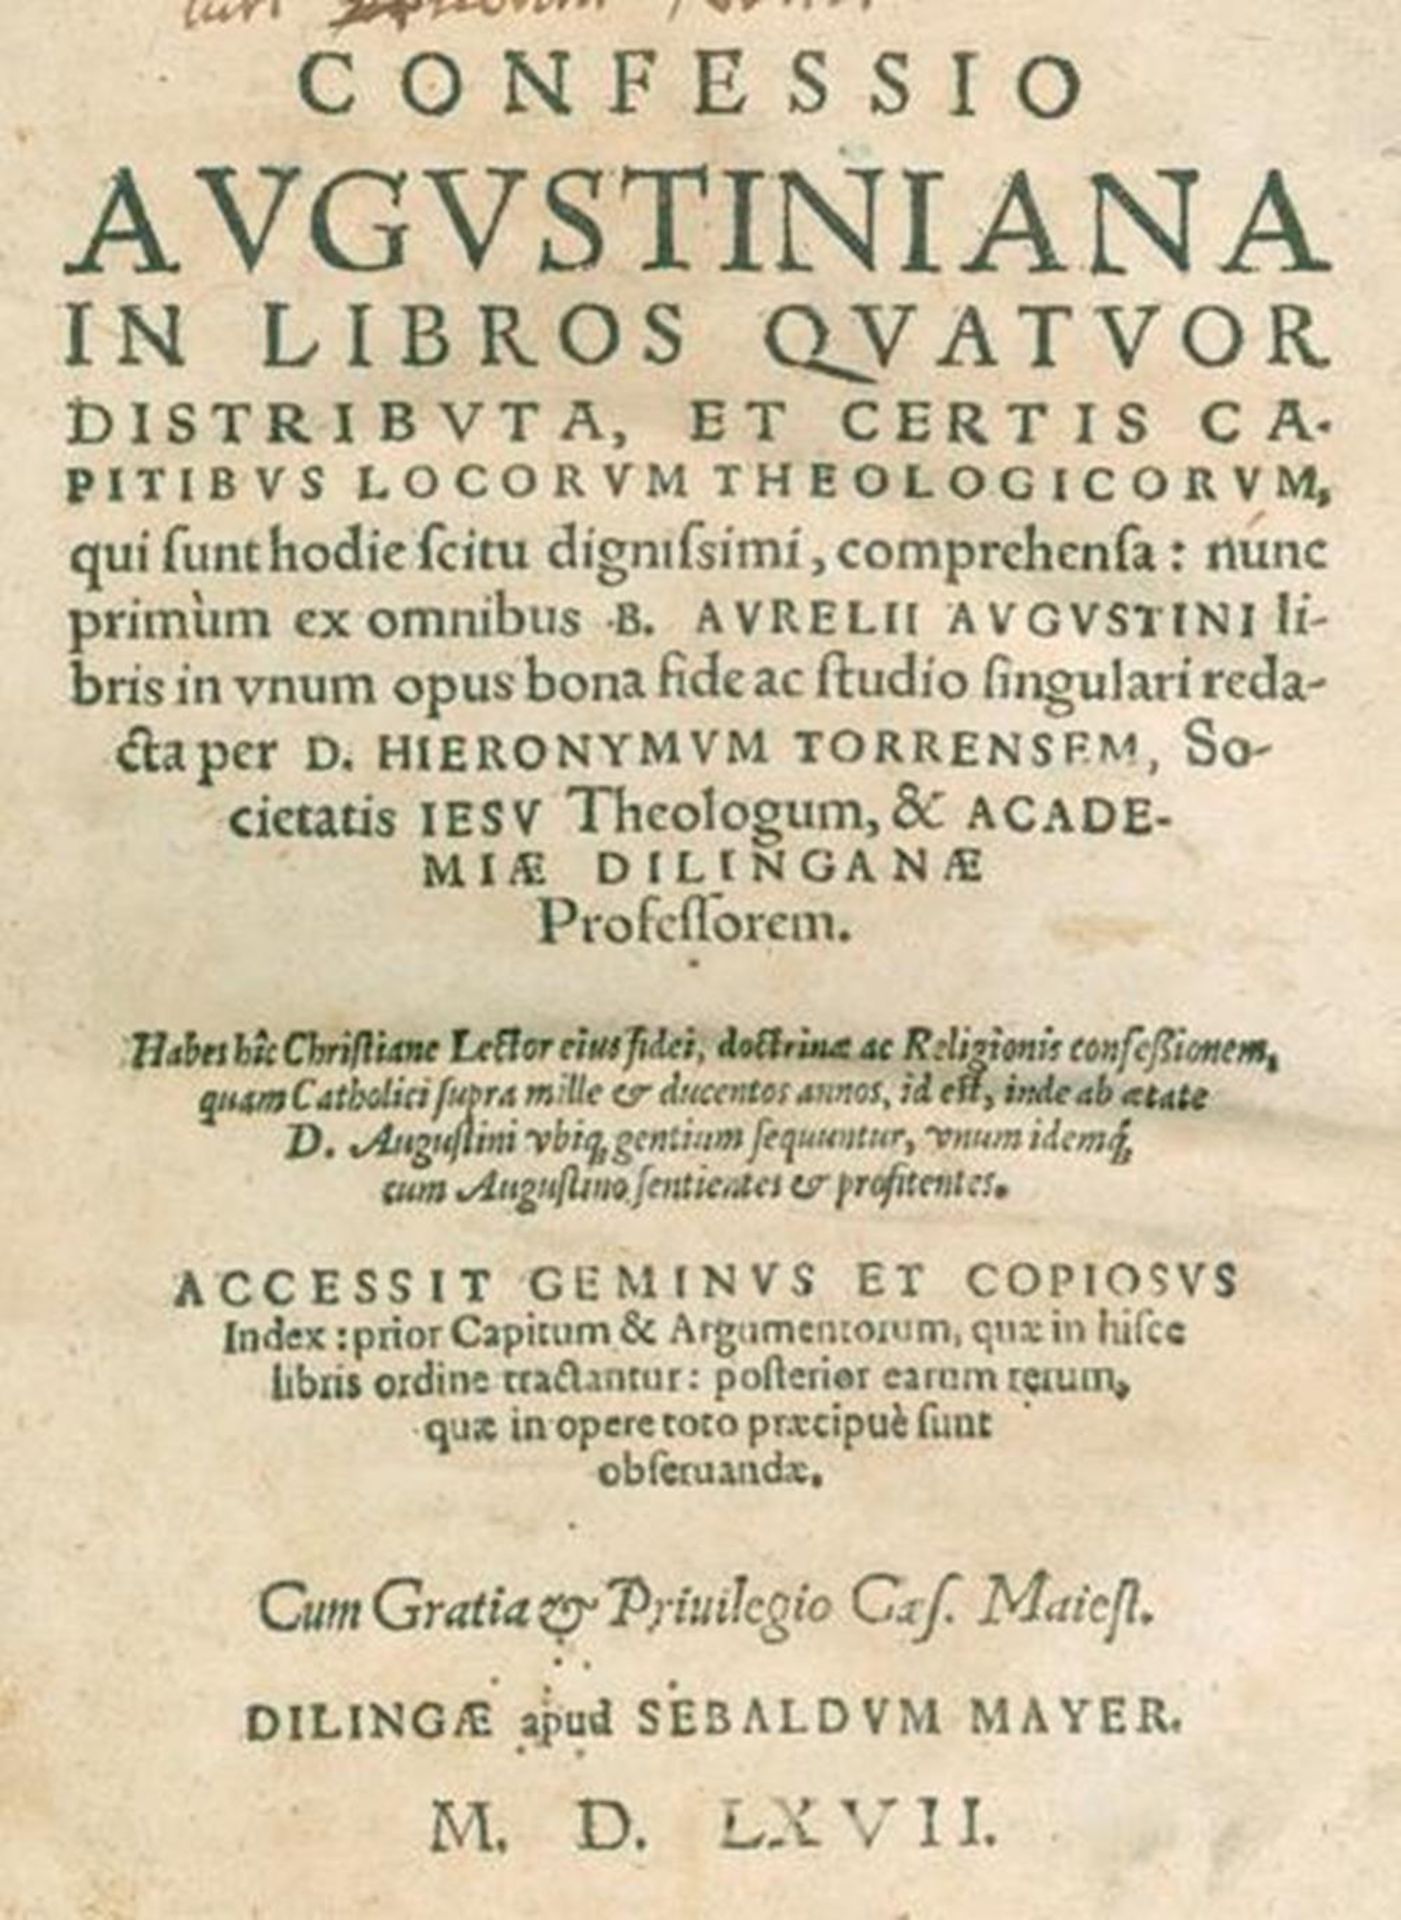 Augustinus,A.Augustinus,A. Confessio Augustiniana in libros quatuor distributa, et certAugu